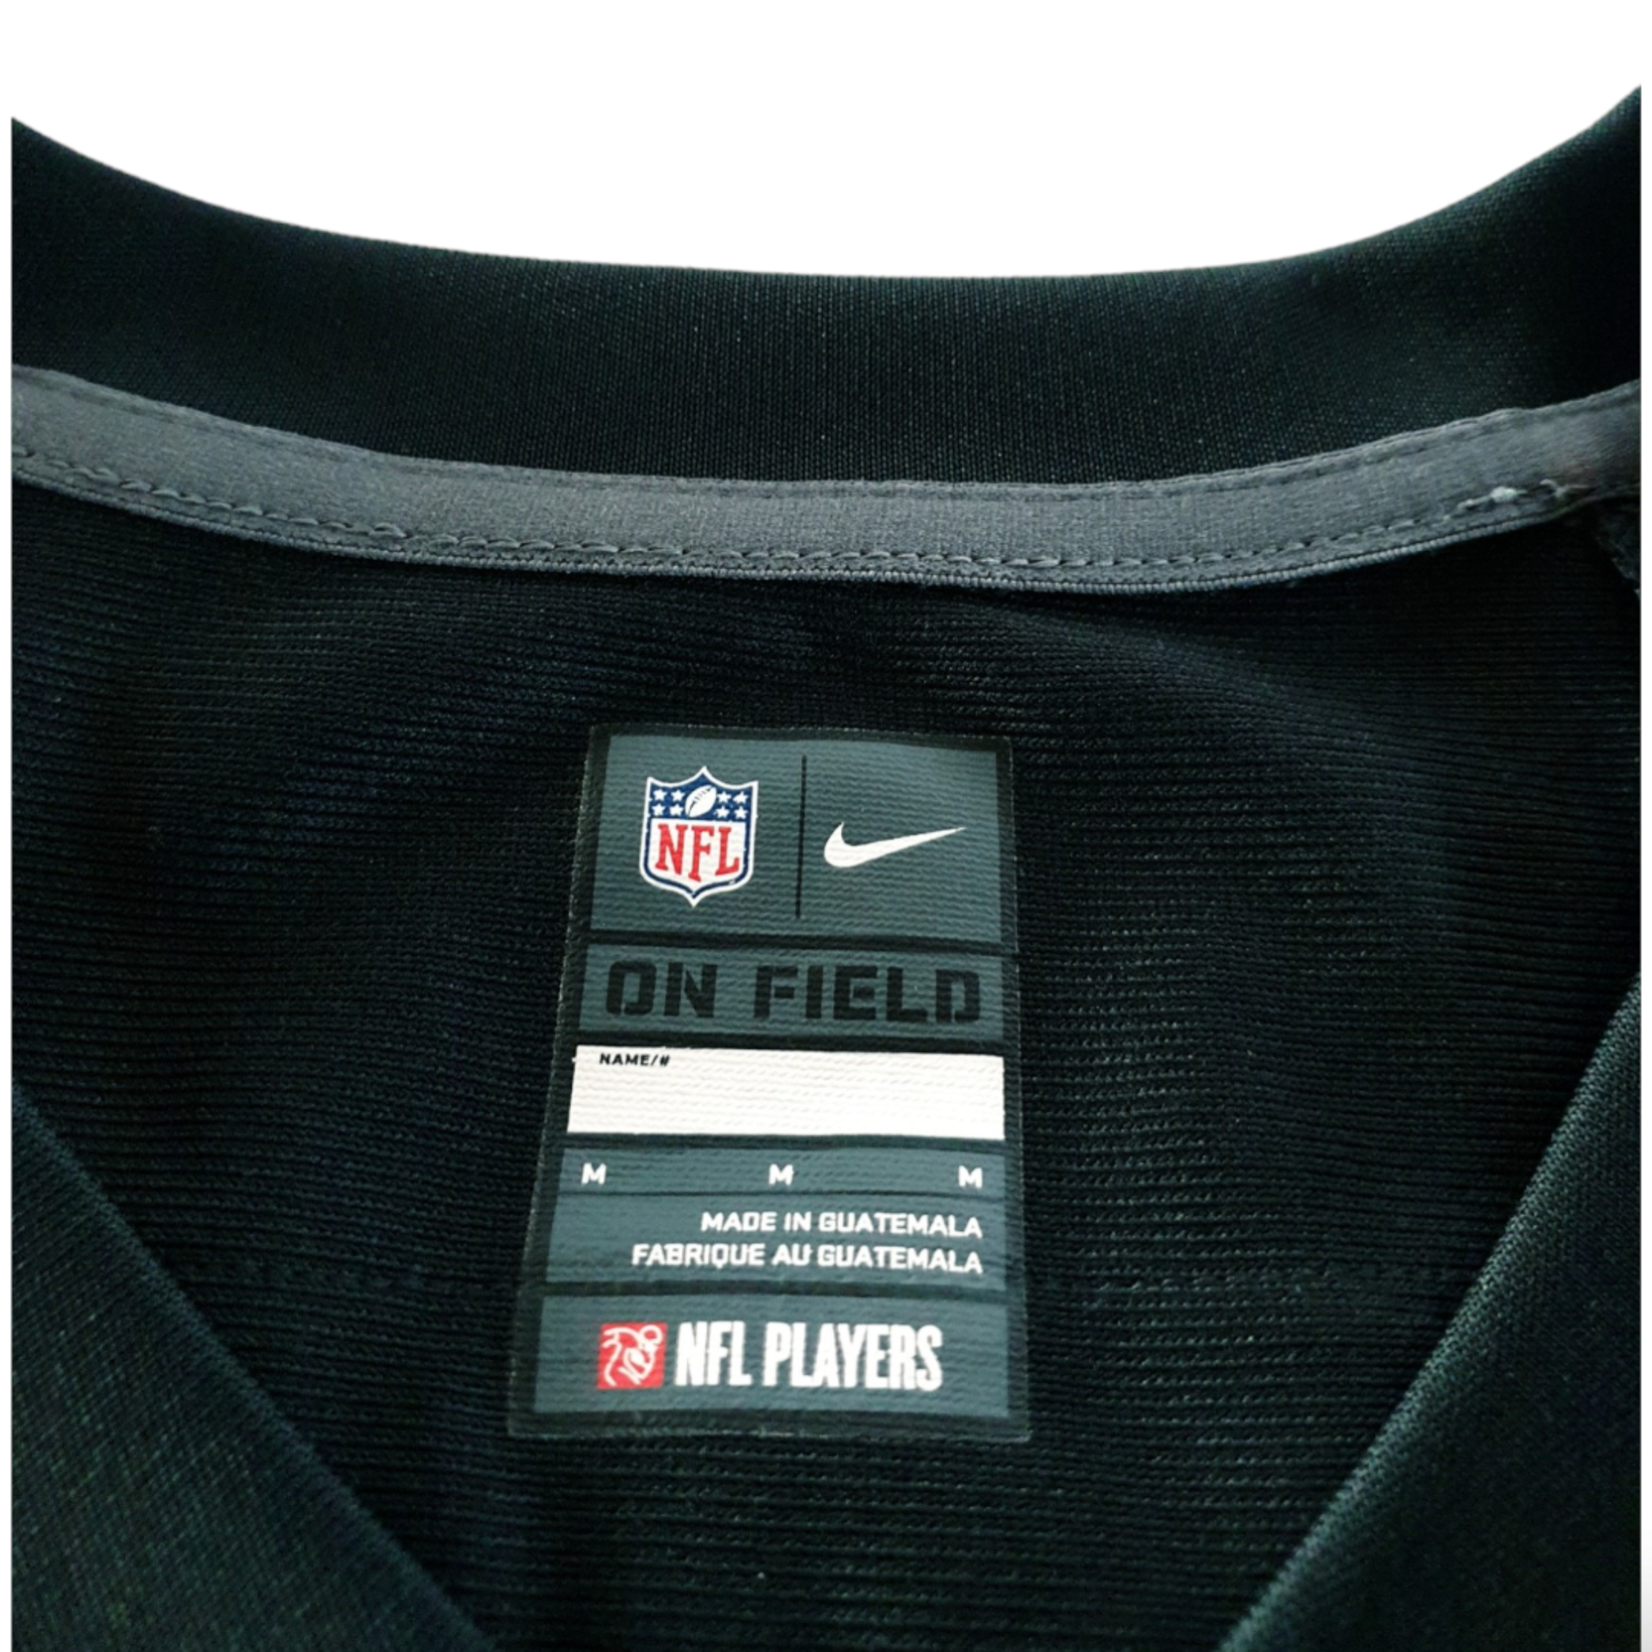 Nike Origineel Nike vintage NFL shirt Jacksonville Jaguars 2013 #32 Jones-Drew